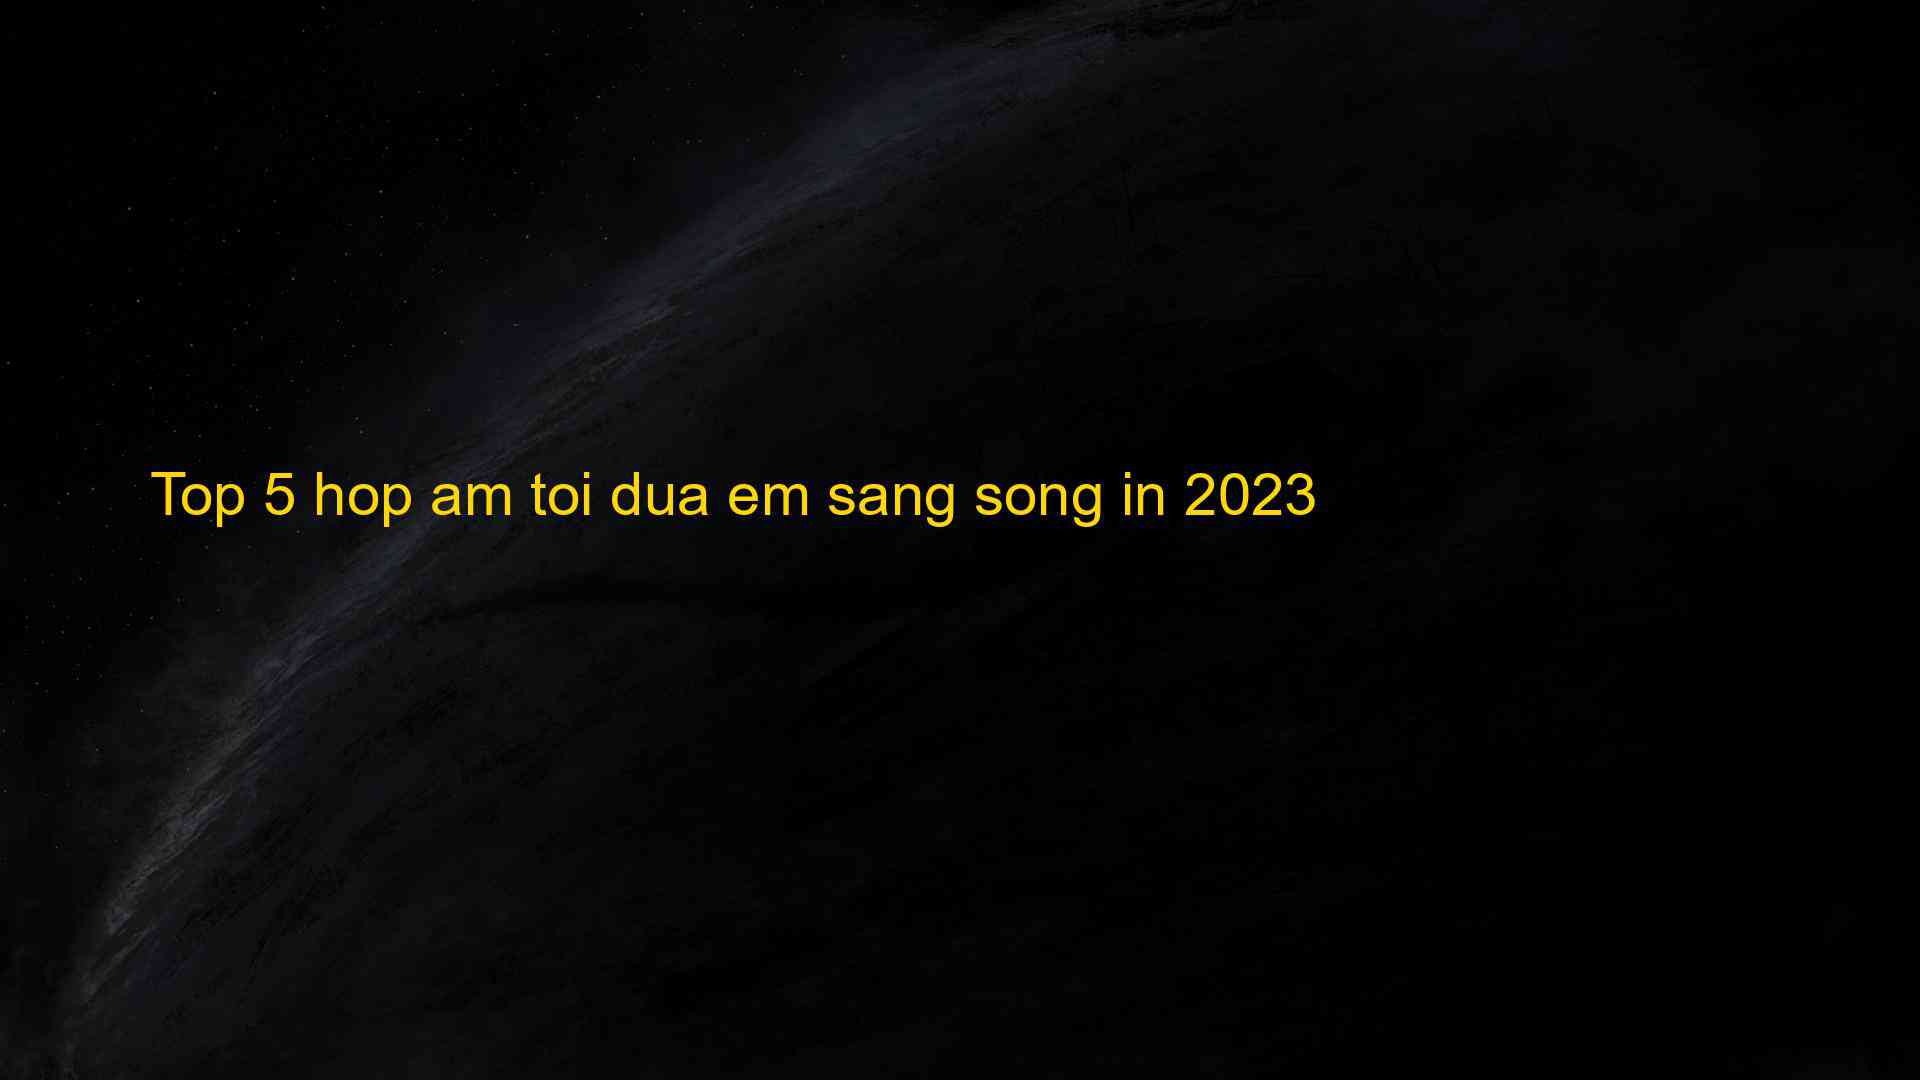 Top 5 hop am toi dua em sang song in 2023 - Chia Sẻ Kiến Thức Điện Máy Việt Nam